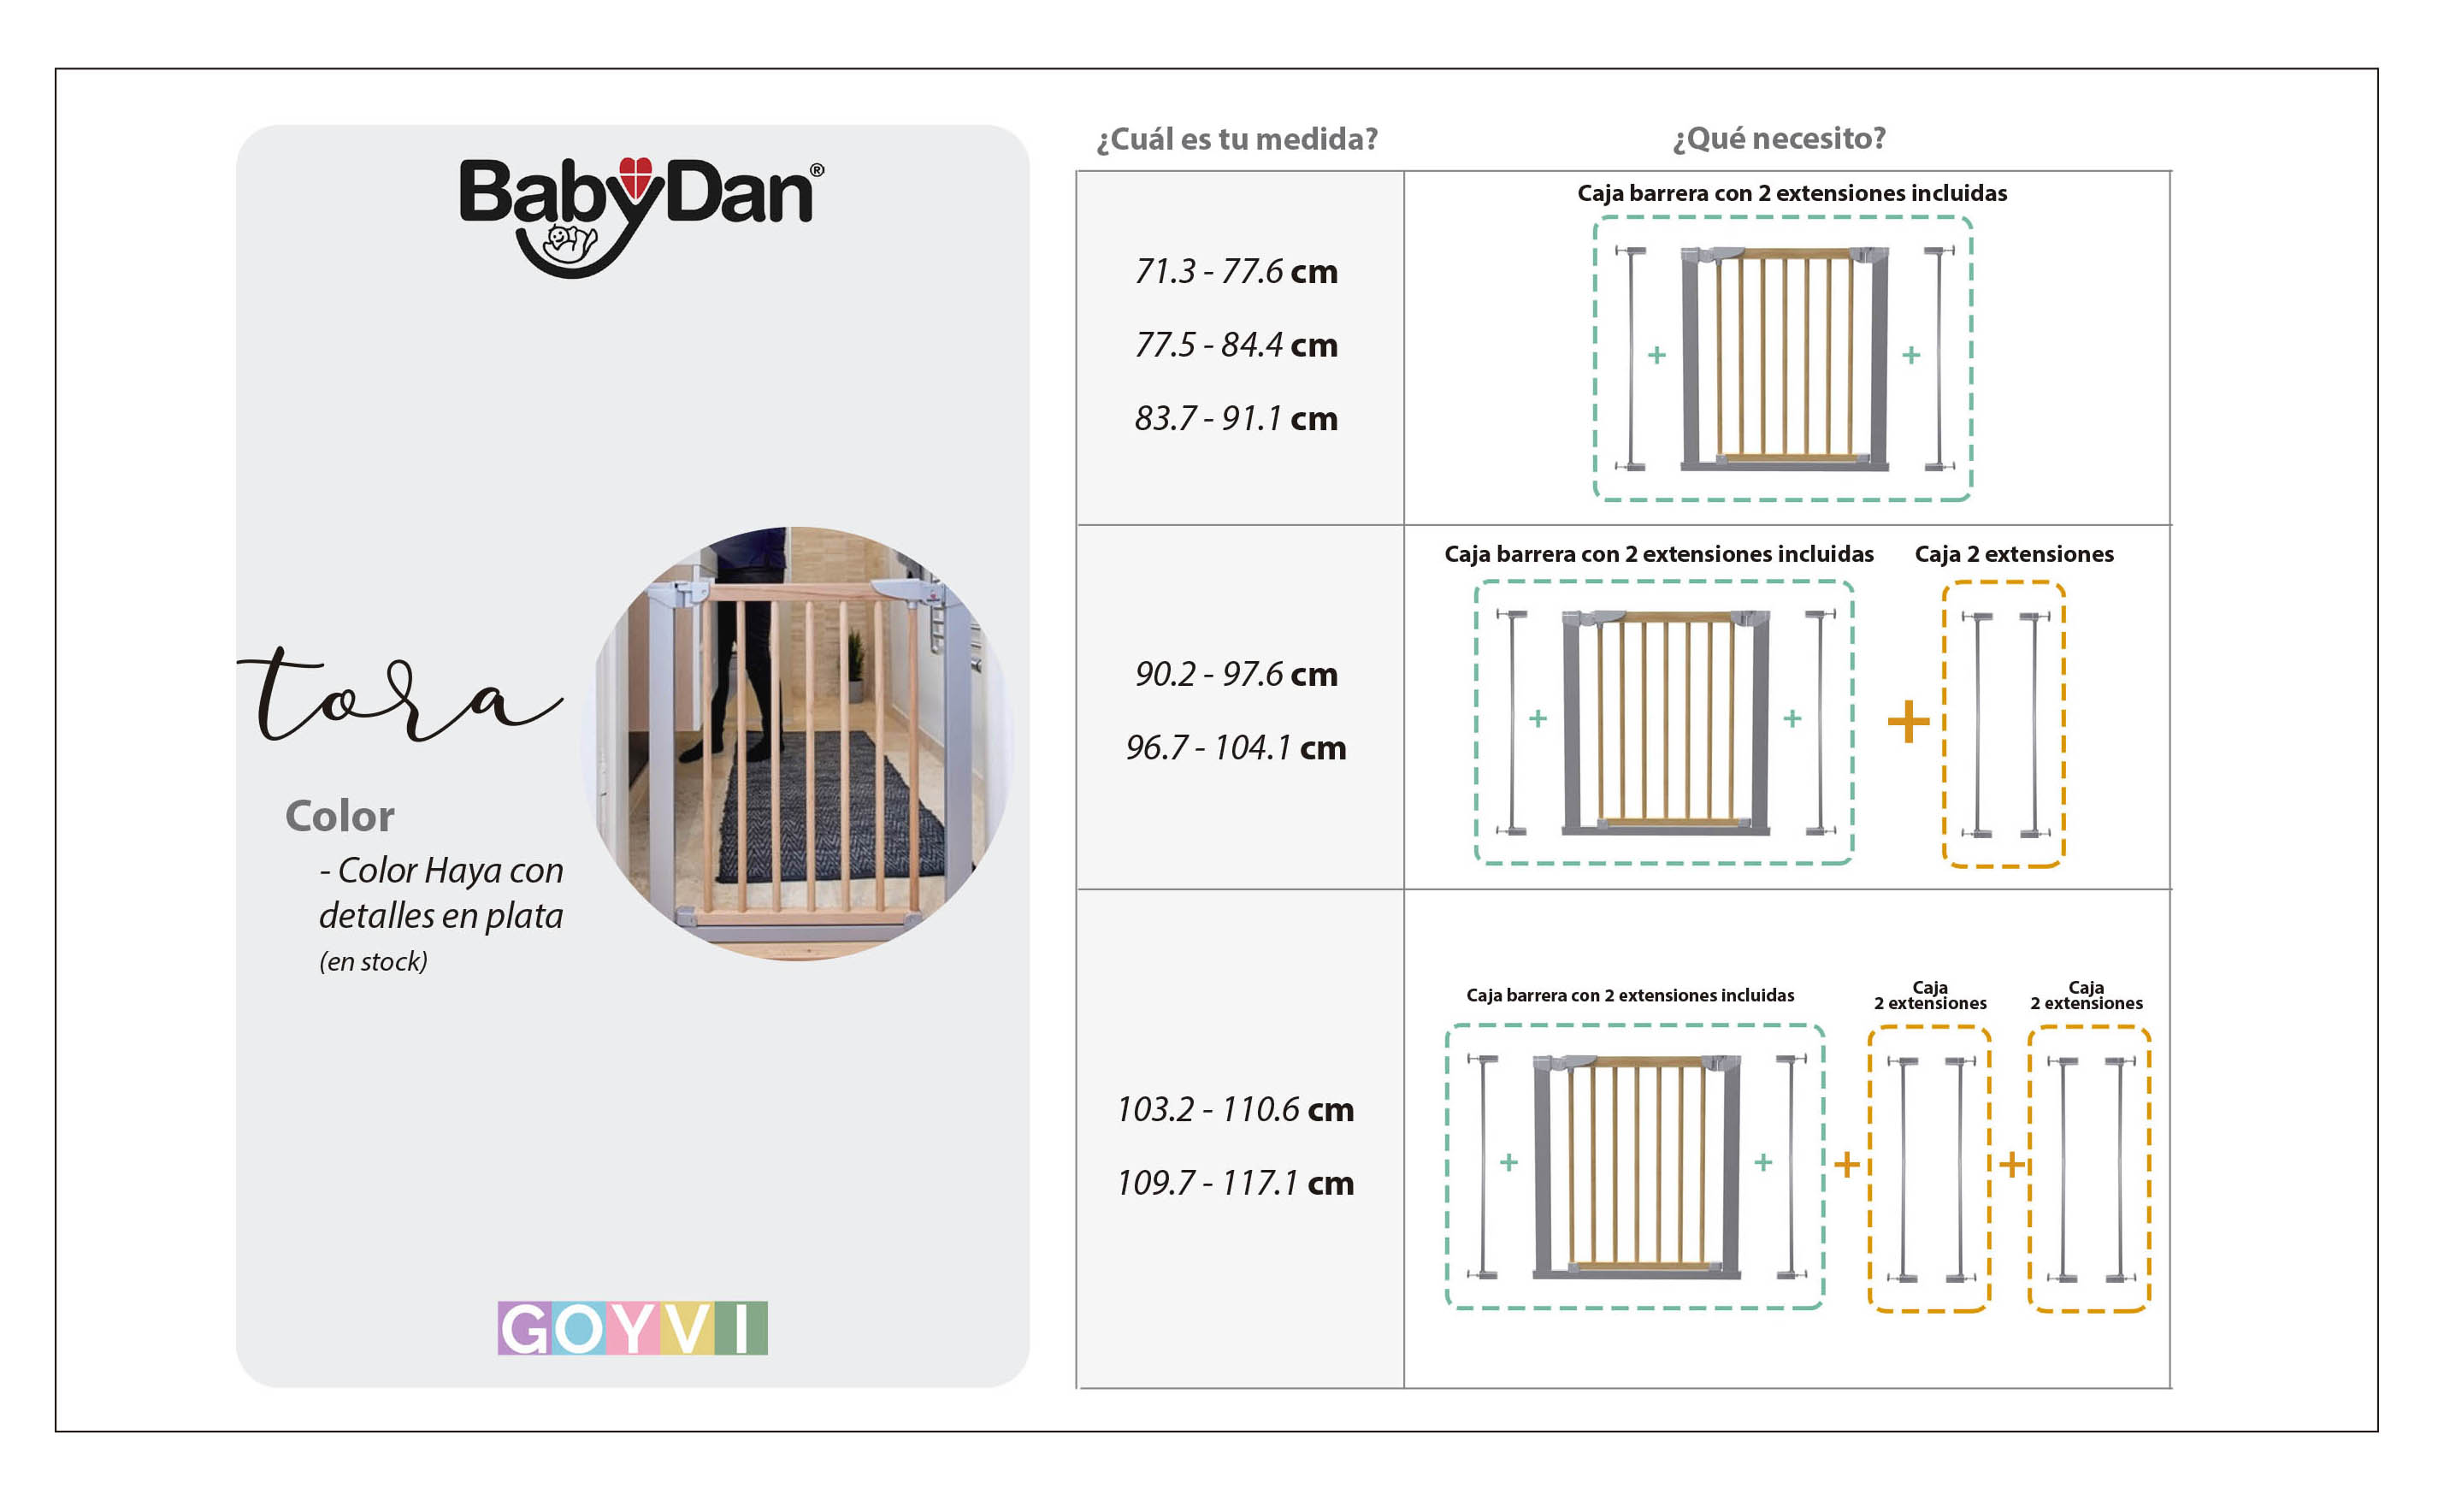 La barrera de seguridad tora de Baby dan ofrece soluciones para cubrir espacios con diferentes medidas gracias a extensiones